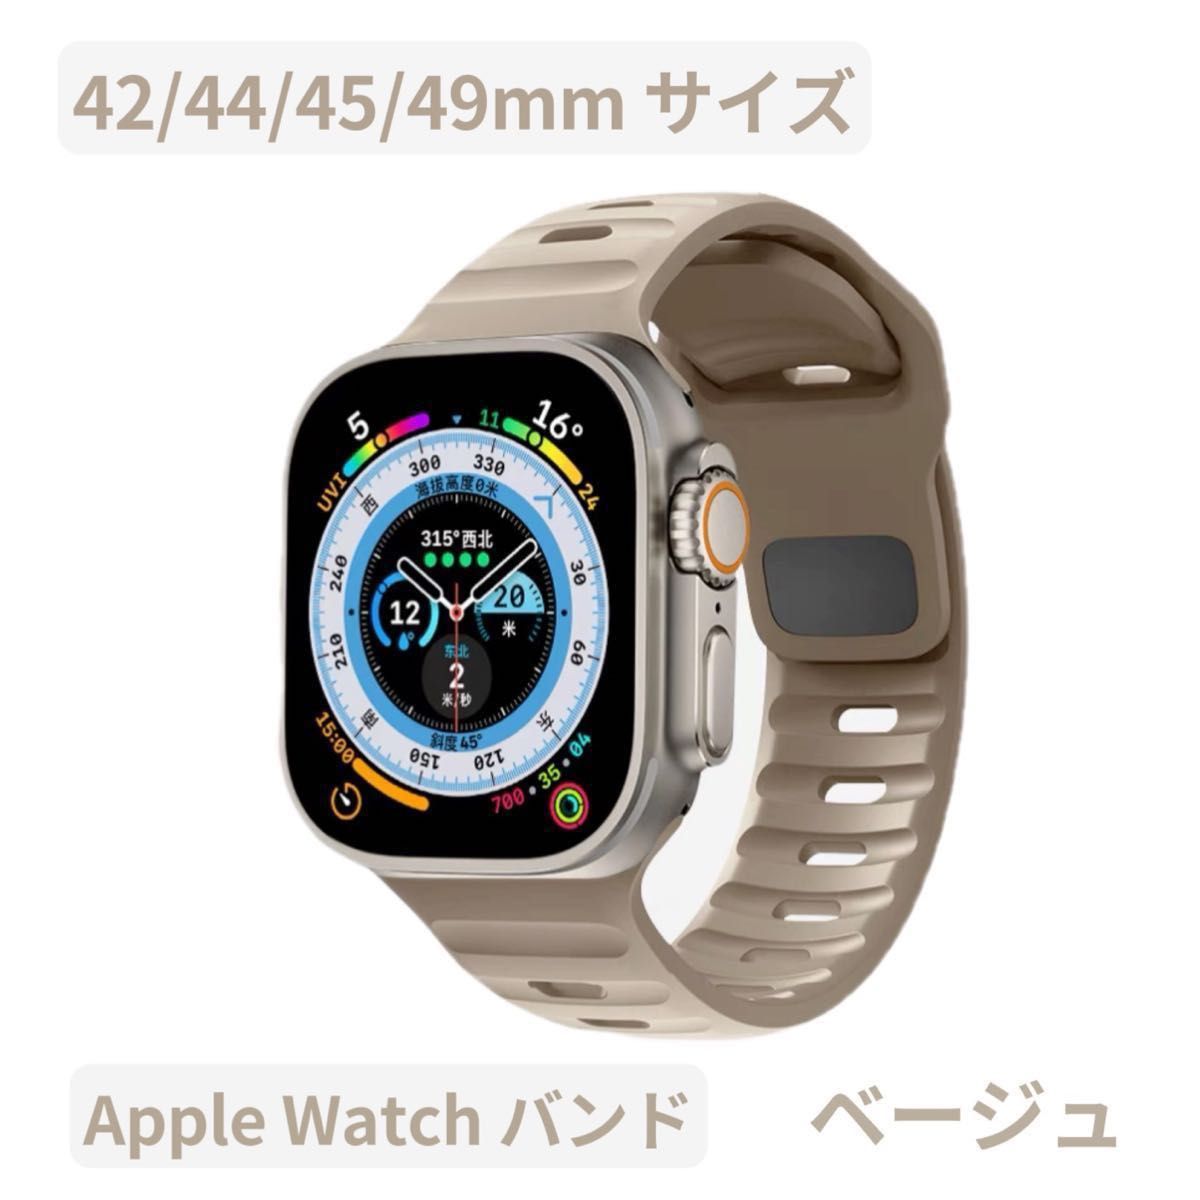 Apple watch band アップルウォッチバンド スポーツバンド 最新 人気 オシャレ ラバーベルト ベージュ